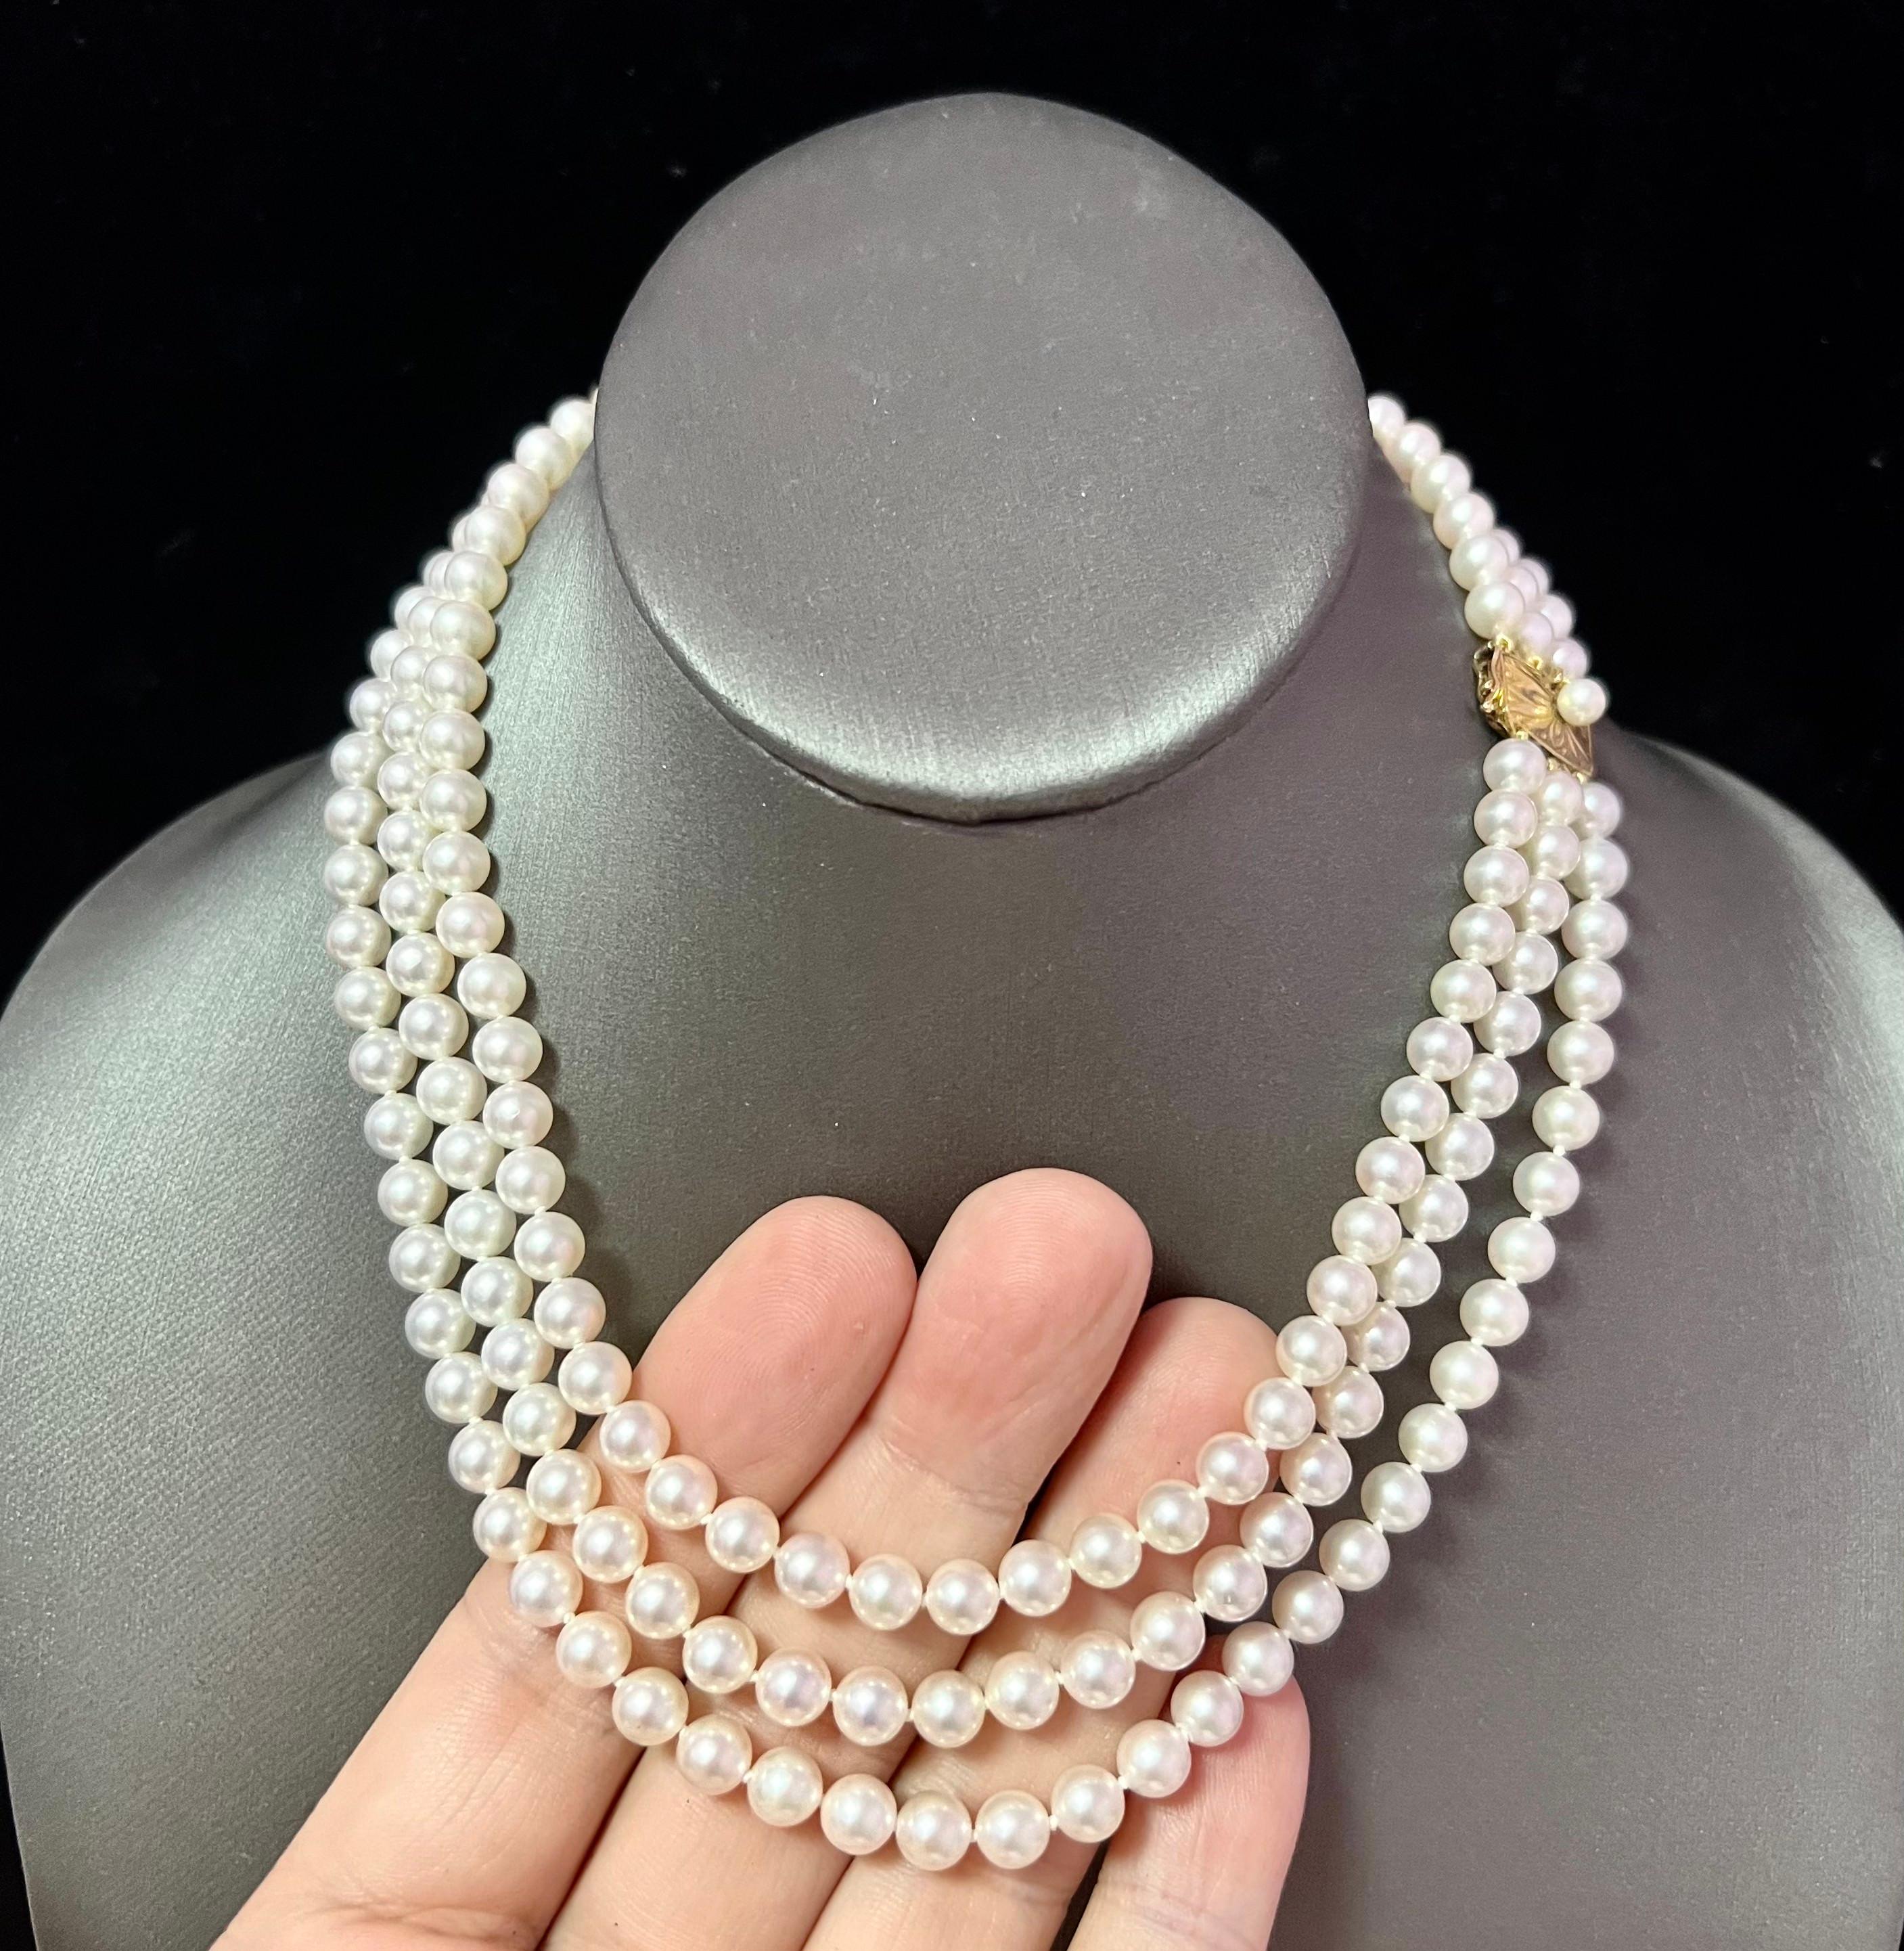 mikimoto three strand pearl necklace